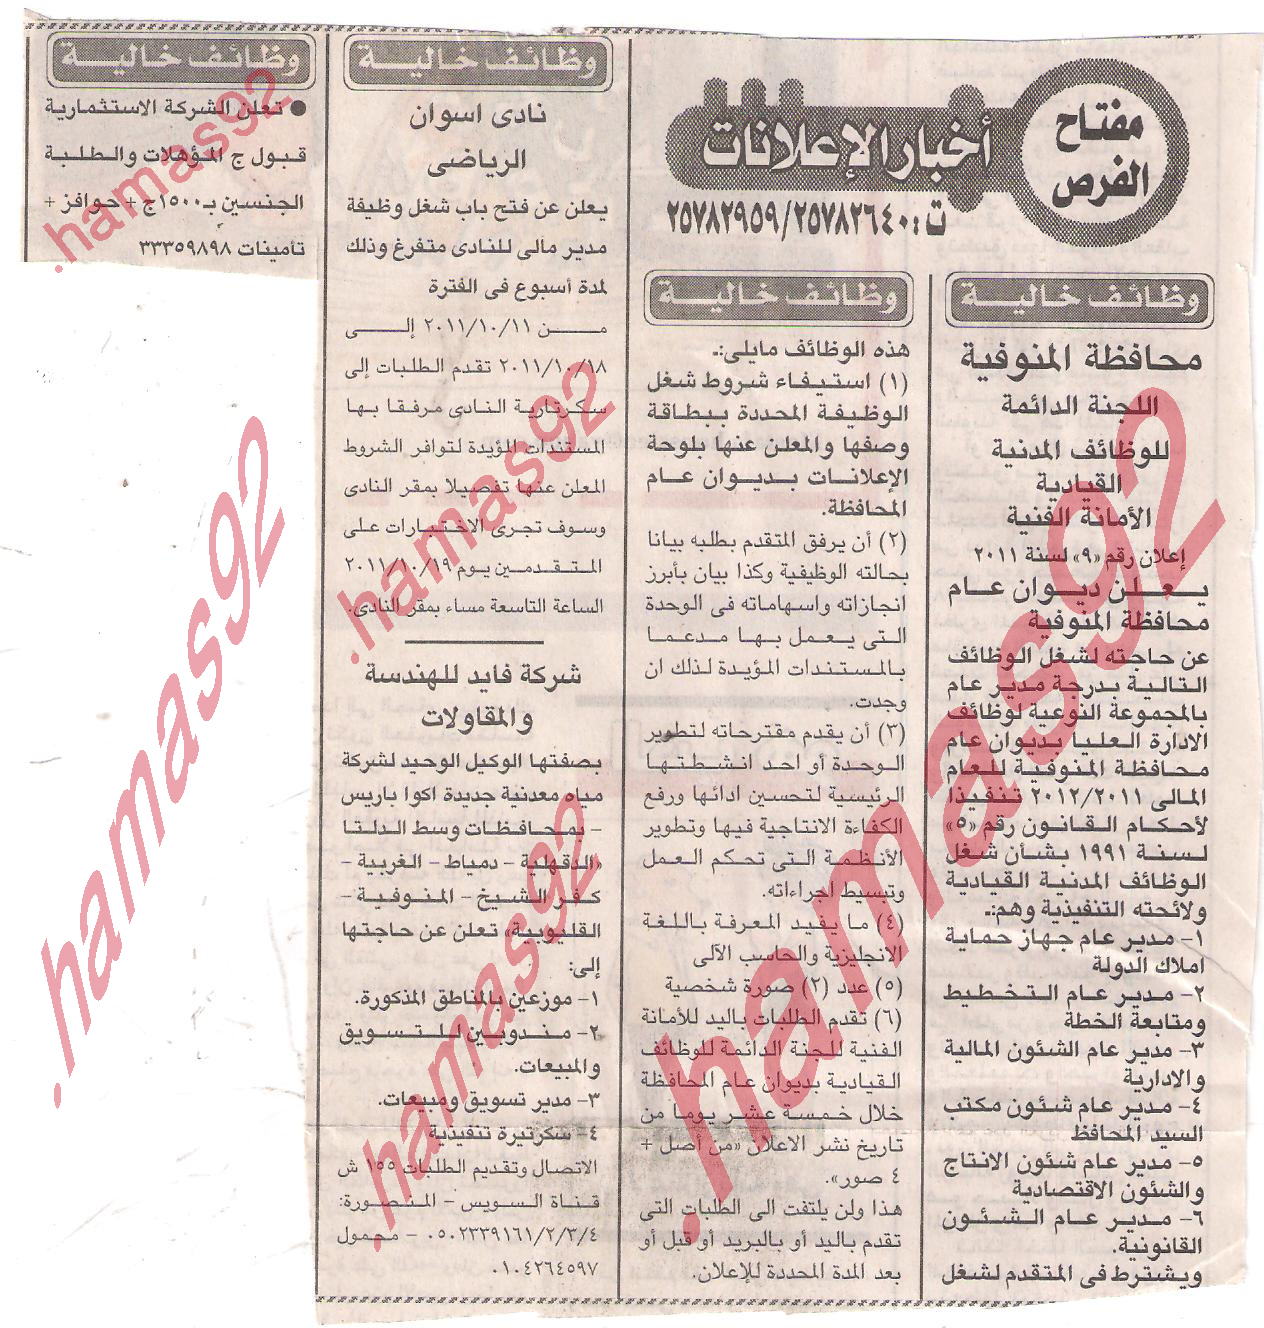 وظائف مصر الاثنين 10 اكتوبر 2011 جريده الاخبار الاثنين 10اكتوبر2011  Picture+001